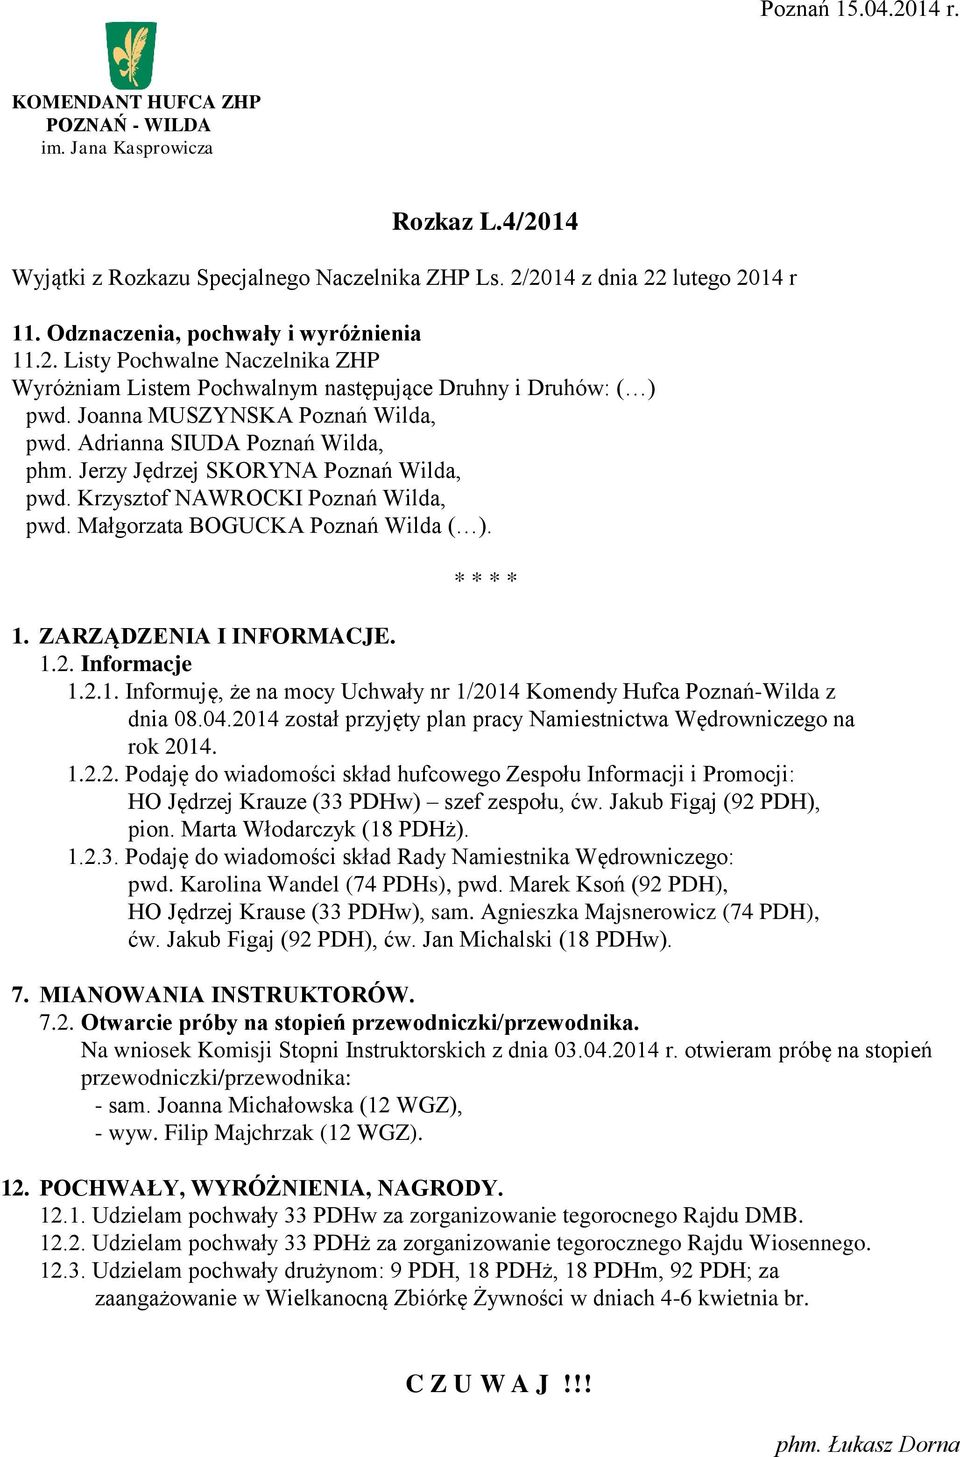 ZARZĄDZENIA I INFORMACJE. 1.2. Informacje 1.2.1. Informuję, że na mocy Uchwały nr 1/2014 Komendy Hufca Poznań-Wilda z dnia 08.04.